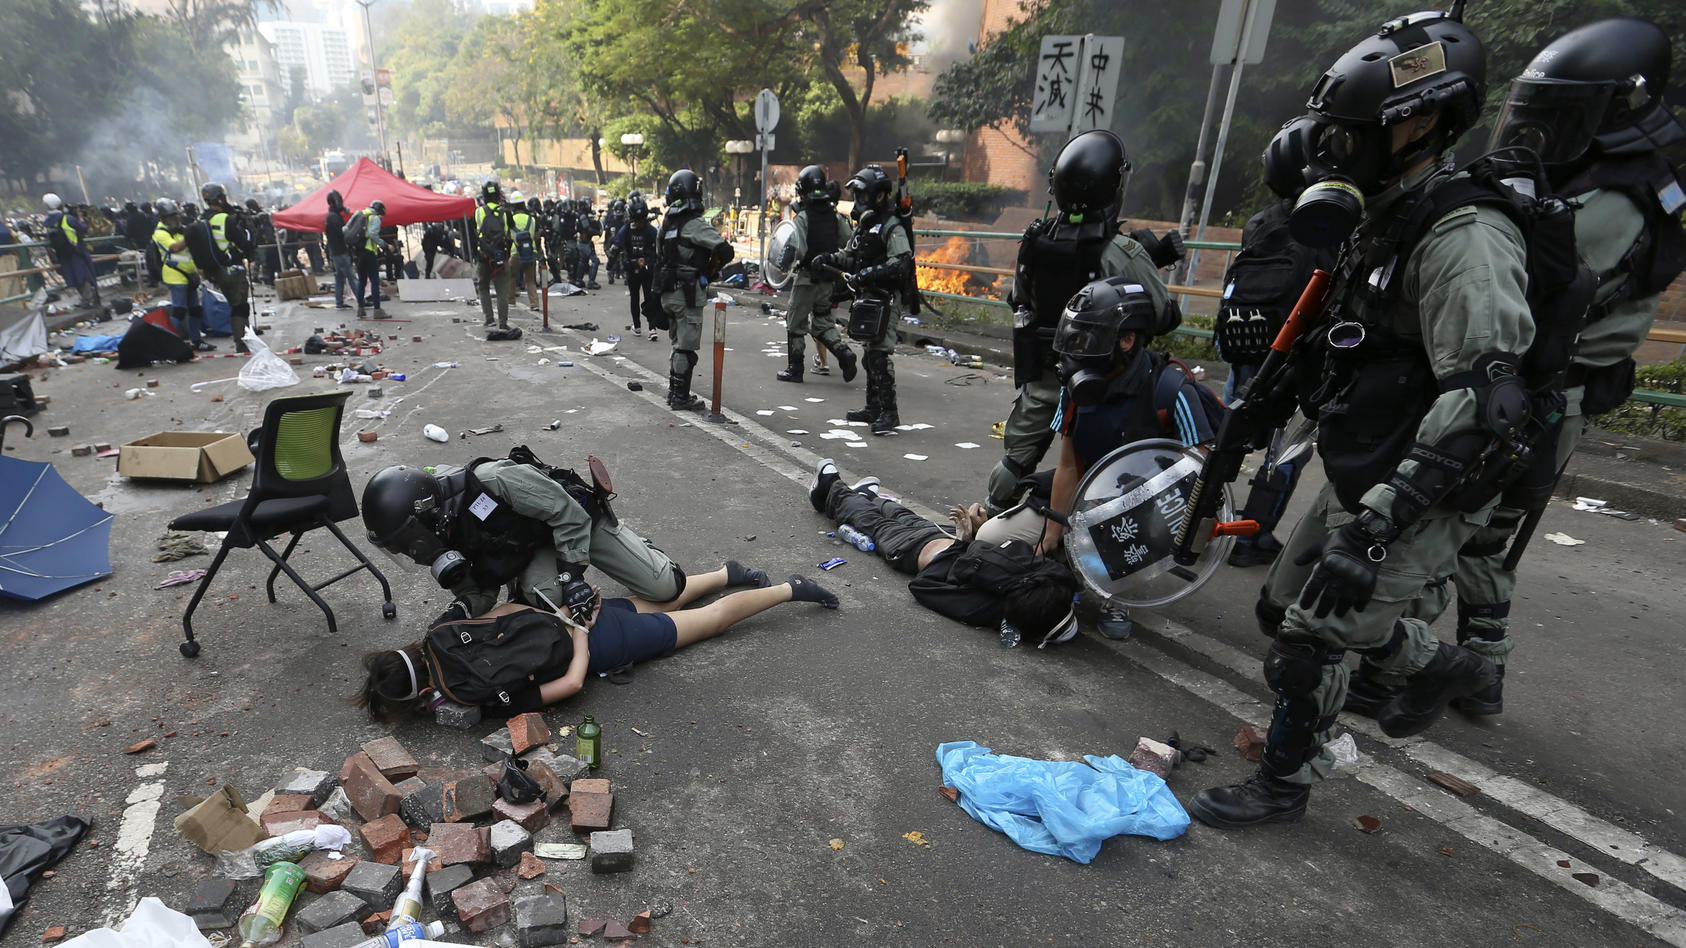 18.11.2019, Hongkong, Hong Kong: Polizisten nehmen Demonstranten an der Polytechnischen Universität in Kowloon fest. Bei den Unruhen haben sich schätzungsweise noch rund 100 Studenten in der von der Polizei belagerten Universität verbarrikadiert. Fot